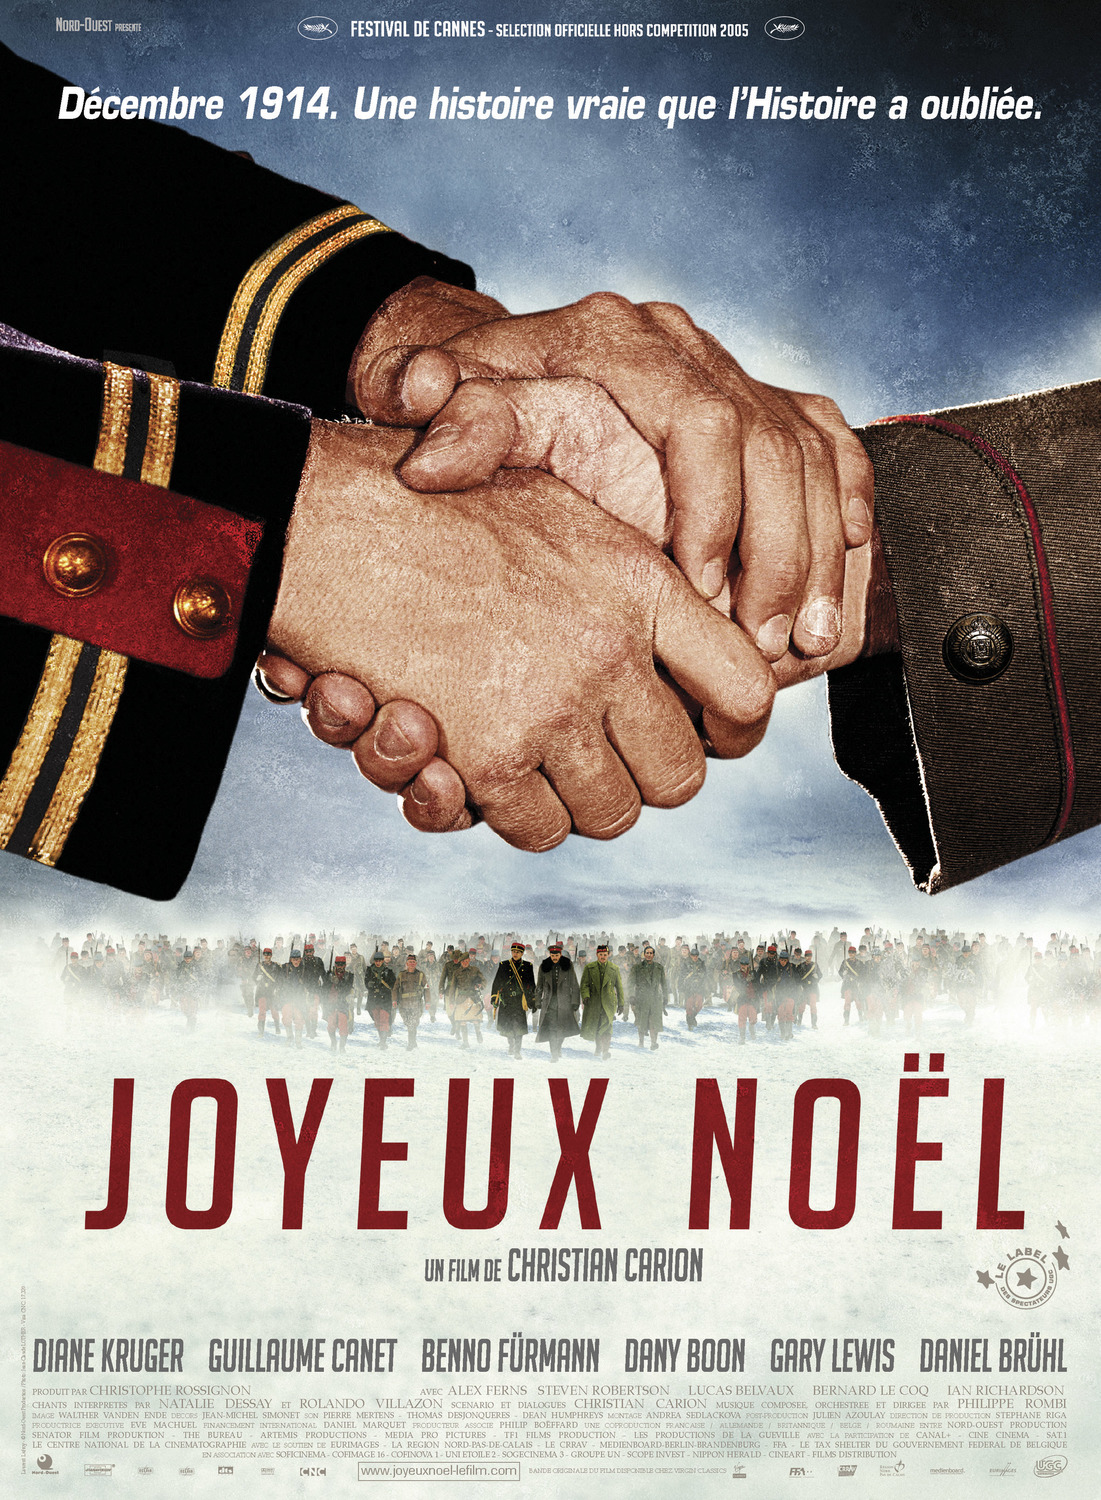 Joyeux Noel (#1 of 5): Extra Large Movie Poster Image - IMP Awards